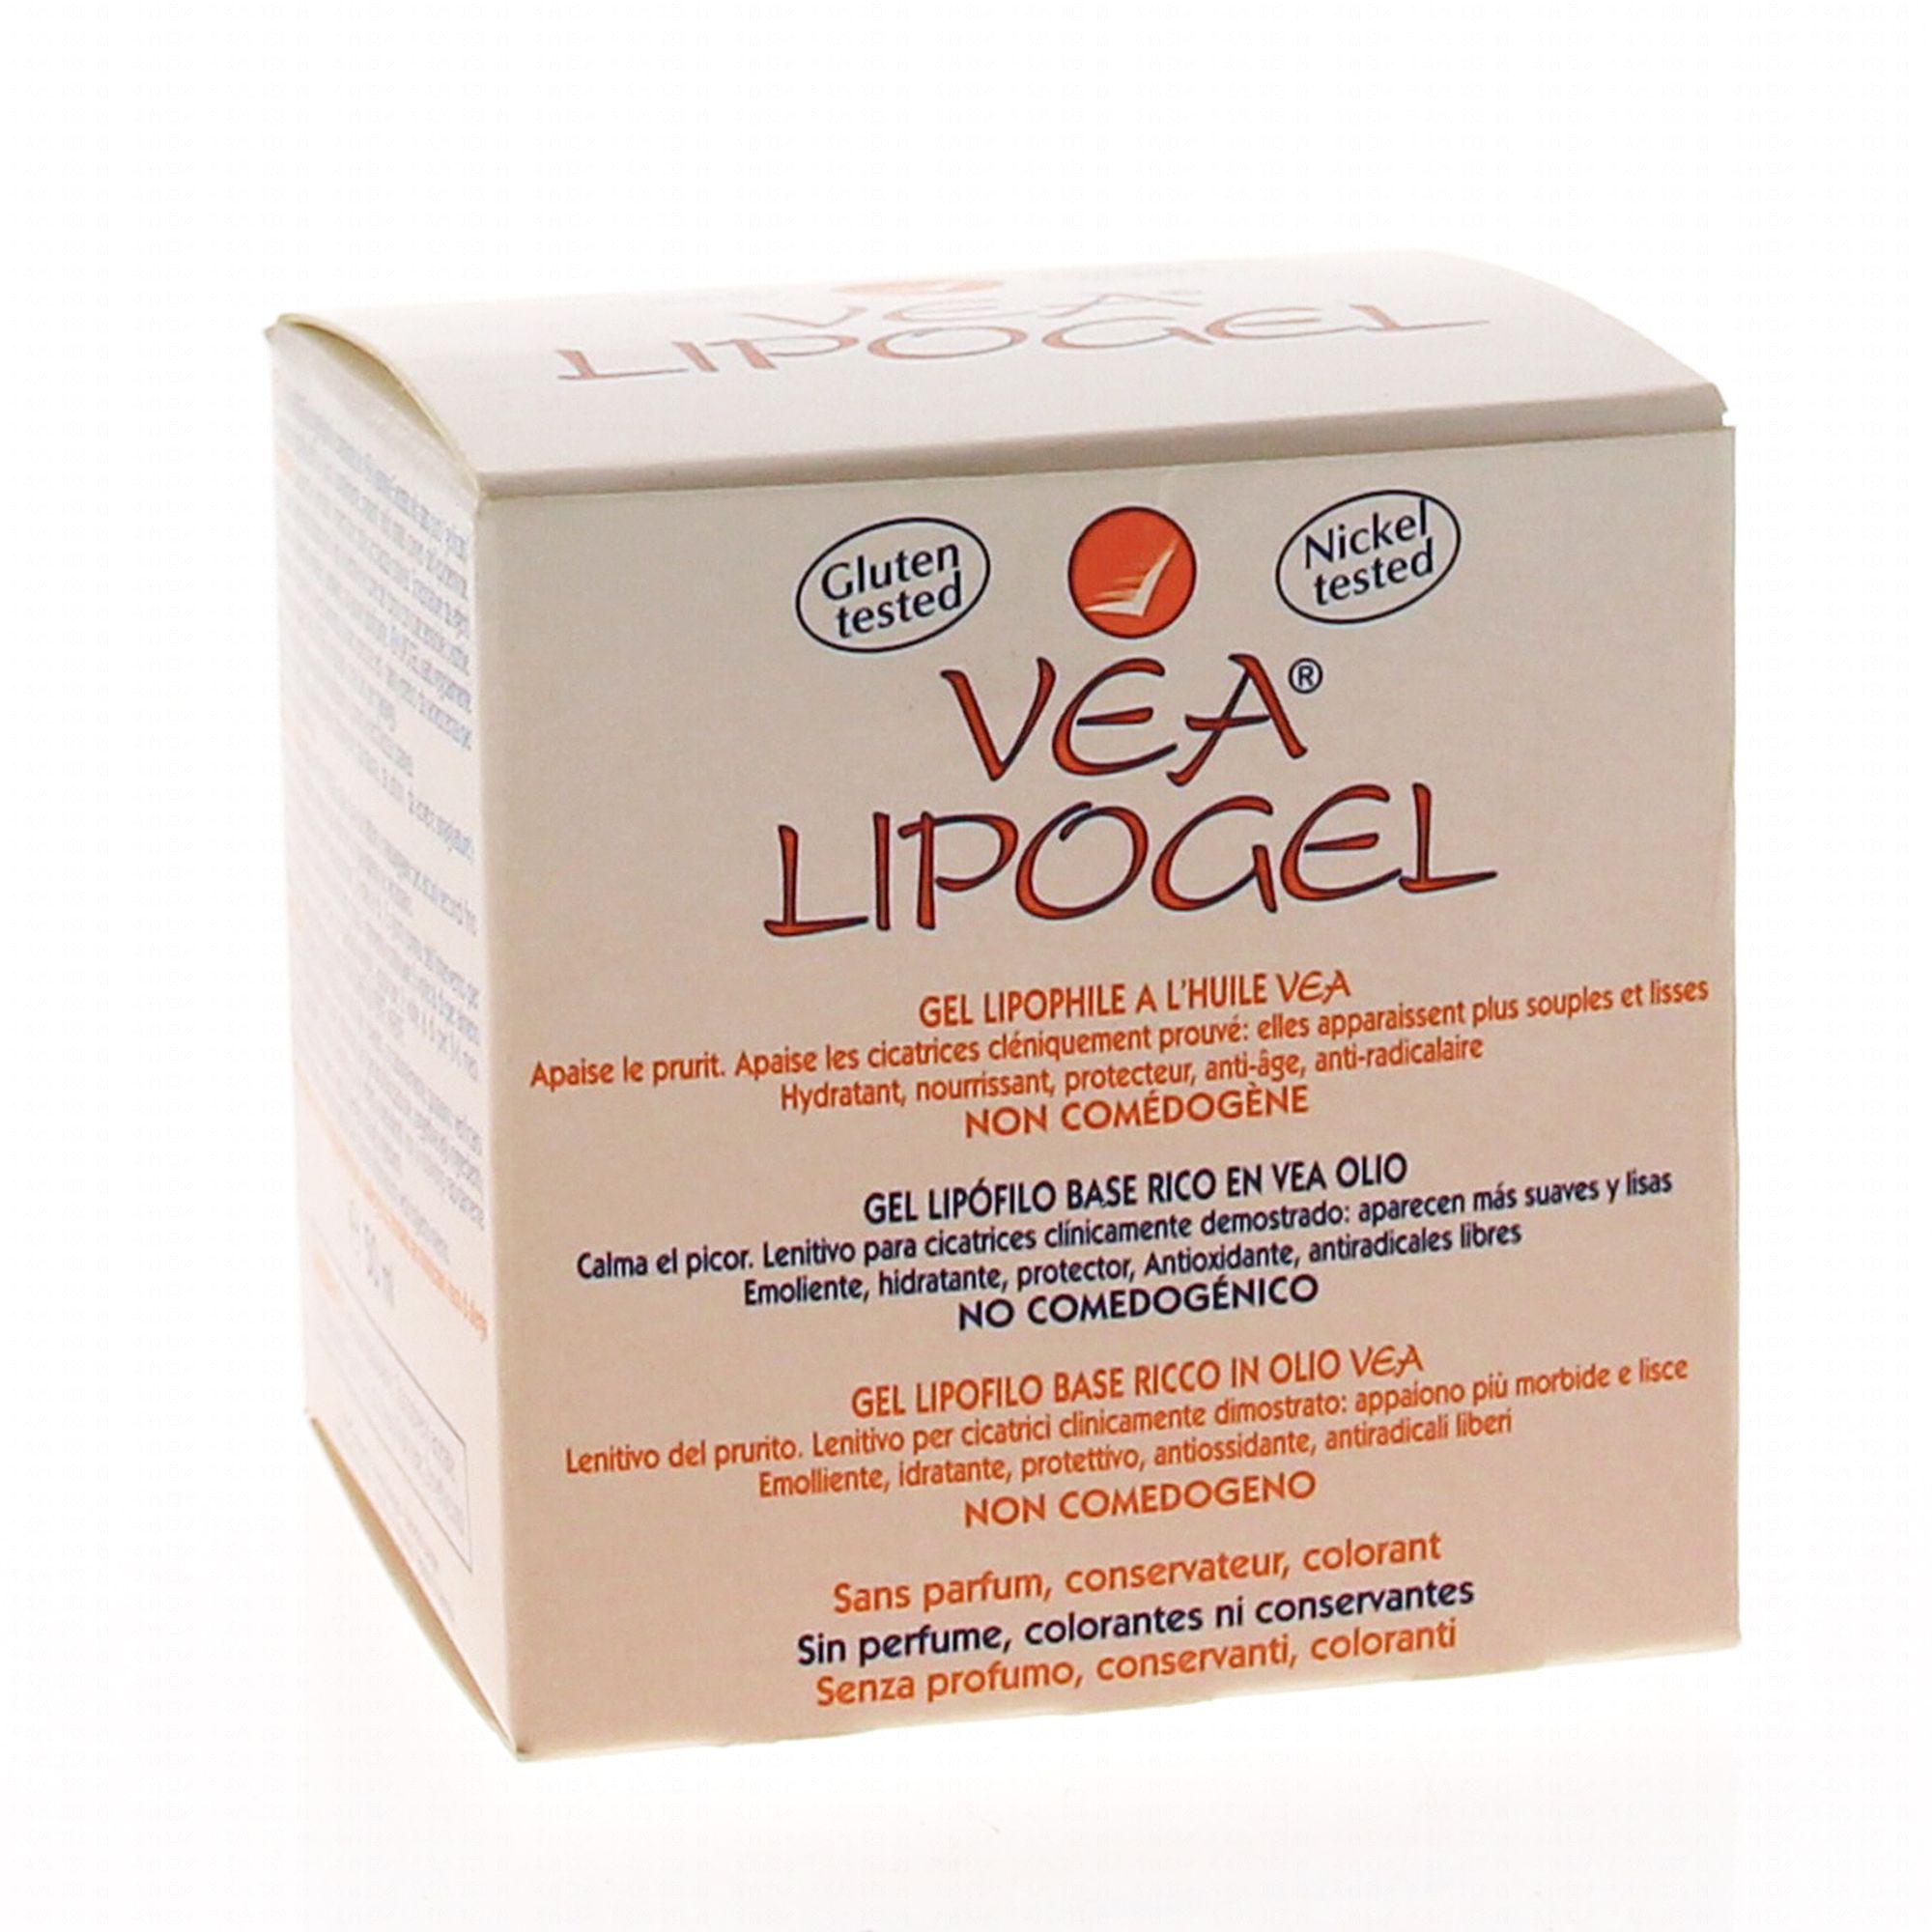 Vea Lipogel es un gel emoliente, hidratante, protector. 200 ml